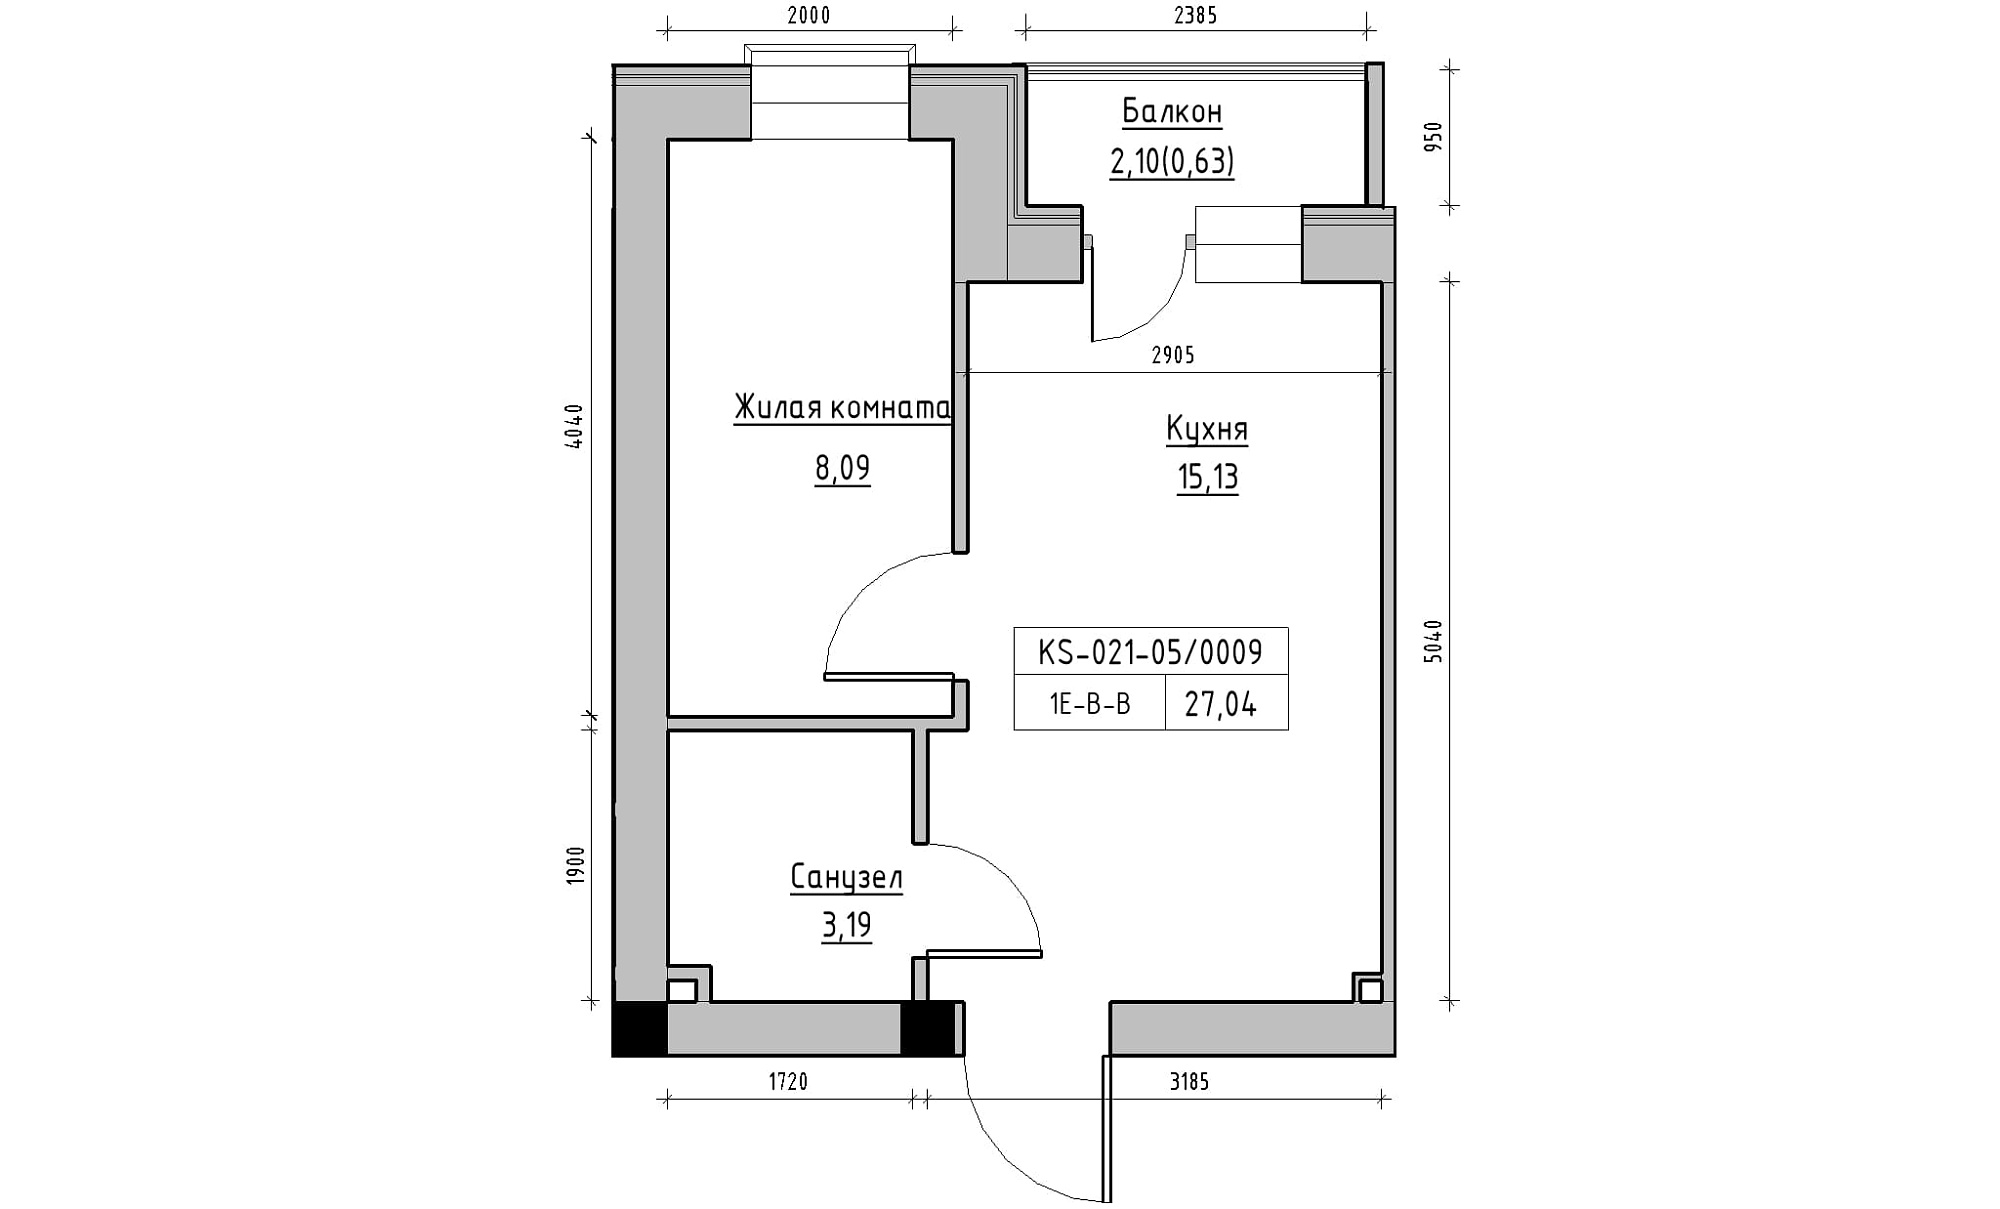 Планировка 1-к квартира площей 27.04м2, KS-021-05/0009.